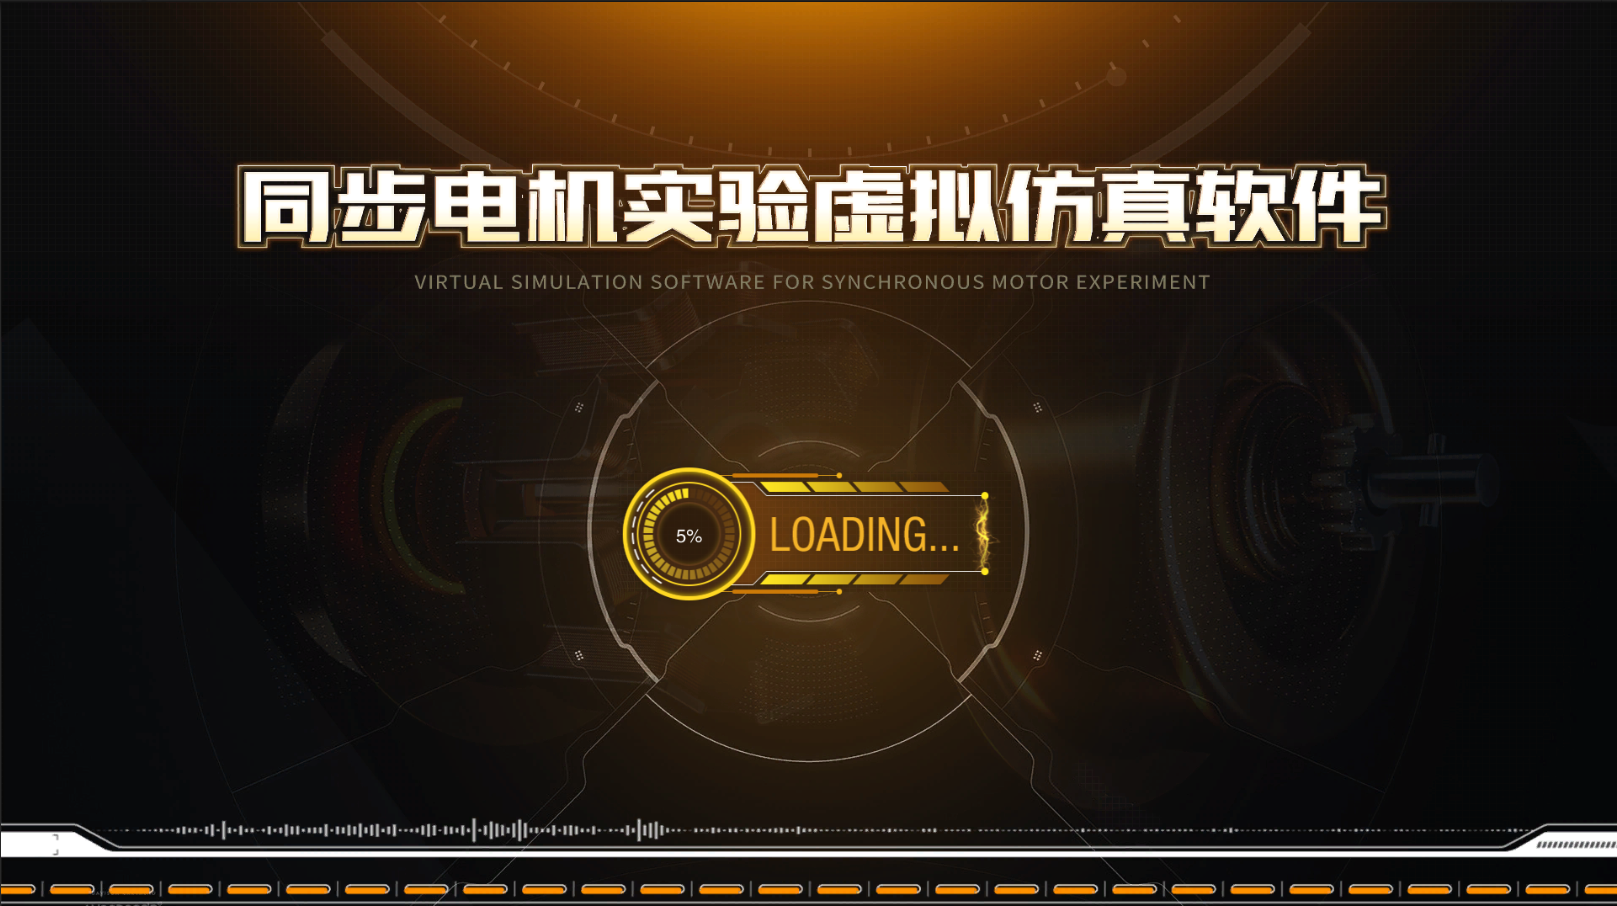 了解电气仿真工程，先看看北京欧倍尔同步电机实验虚拟仿真软件吧